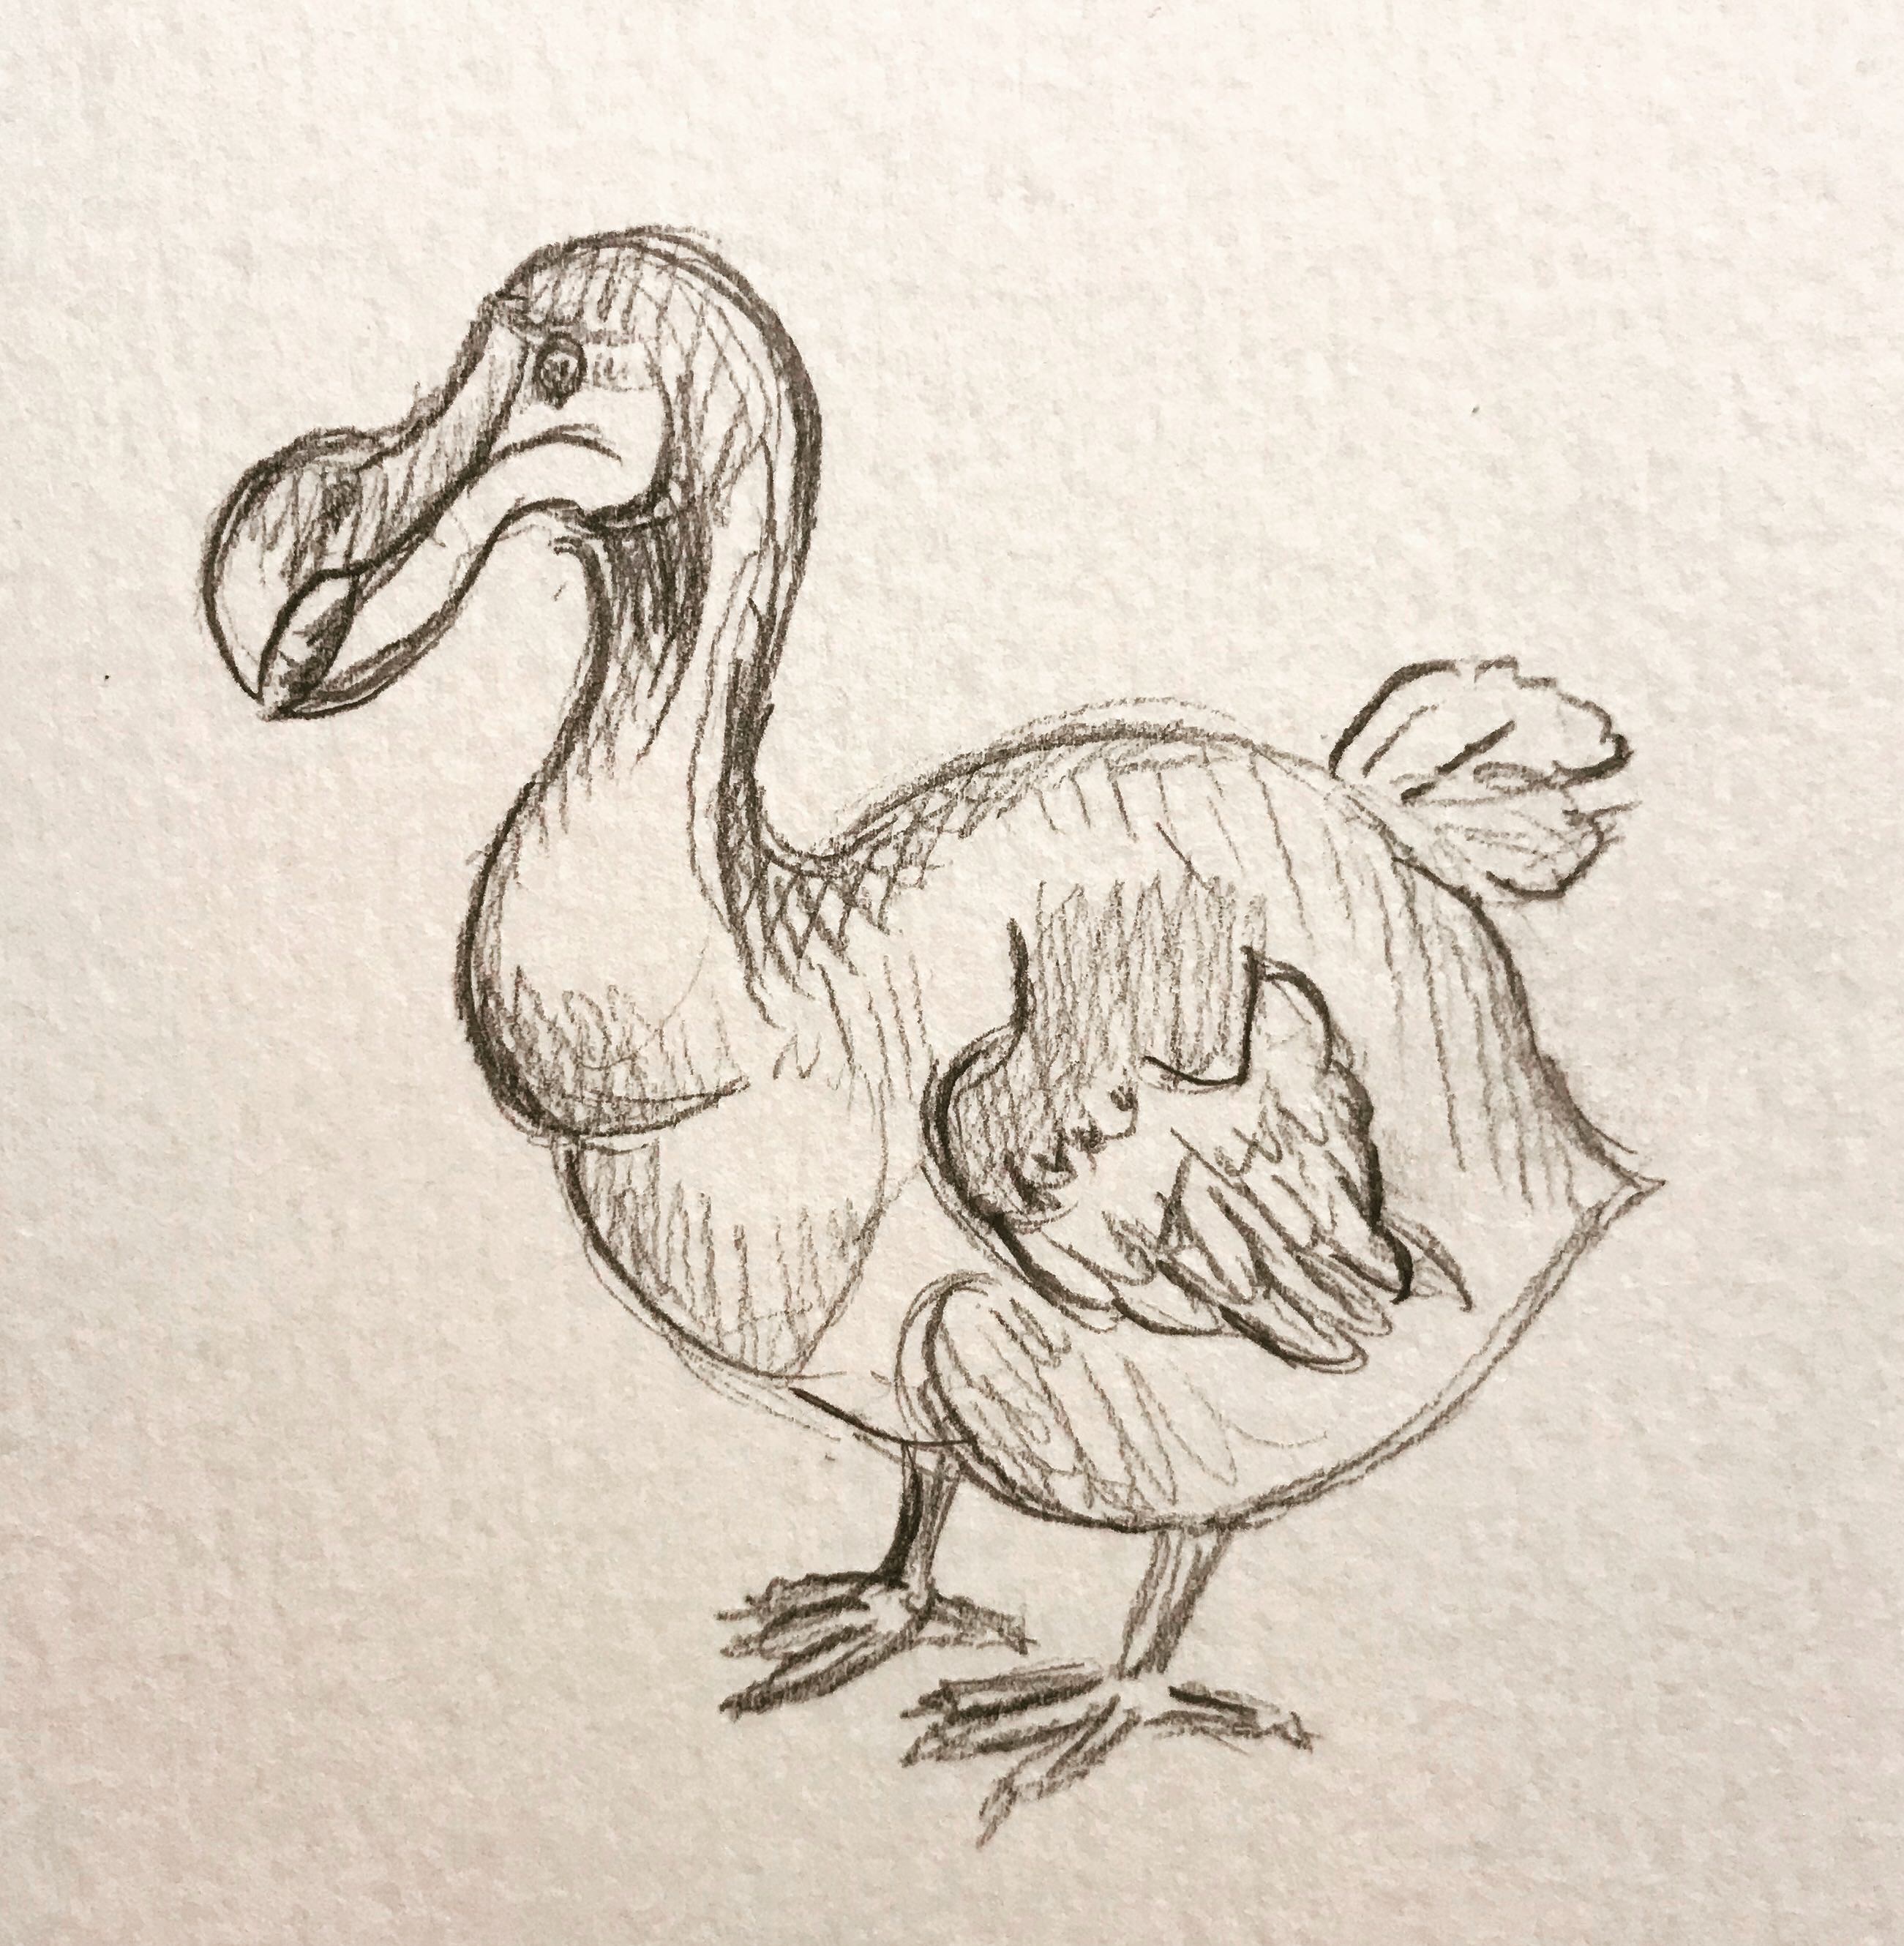 Dodo Sketch at Explore collection of Dodo Sketch